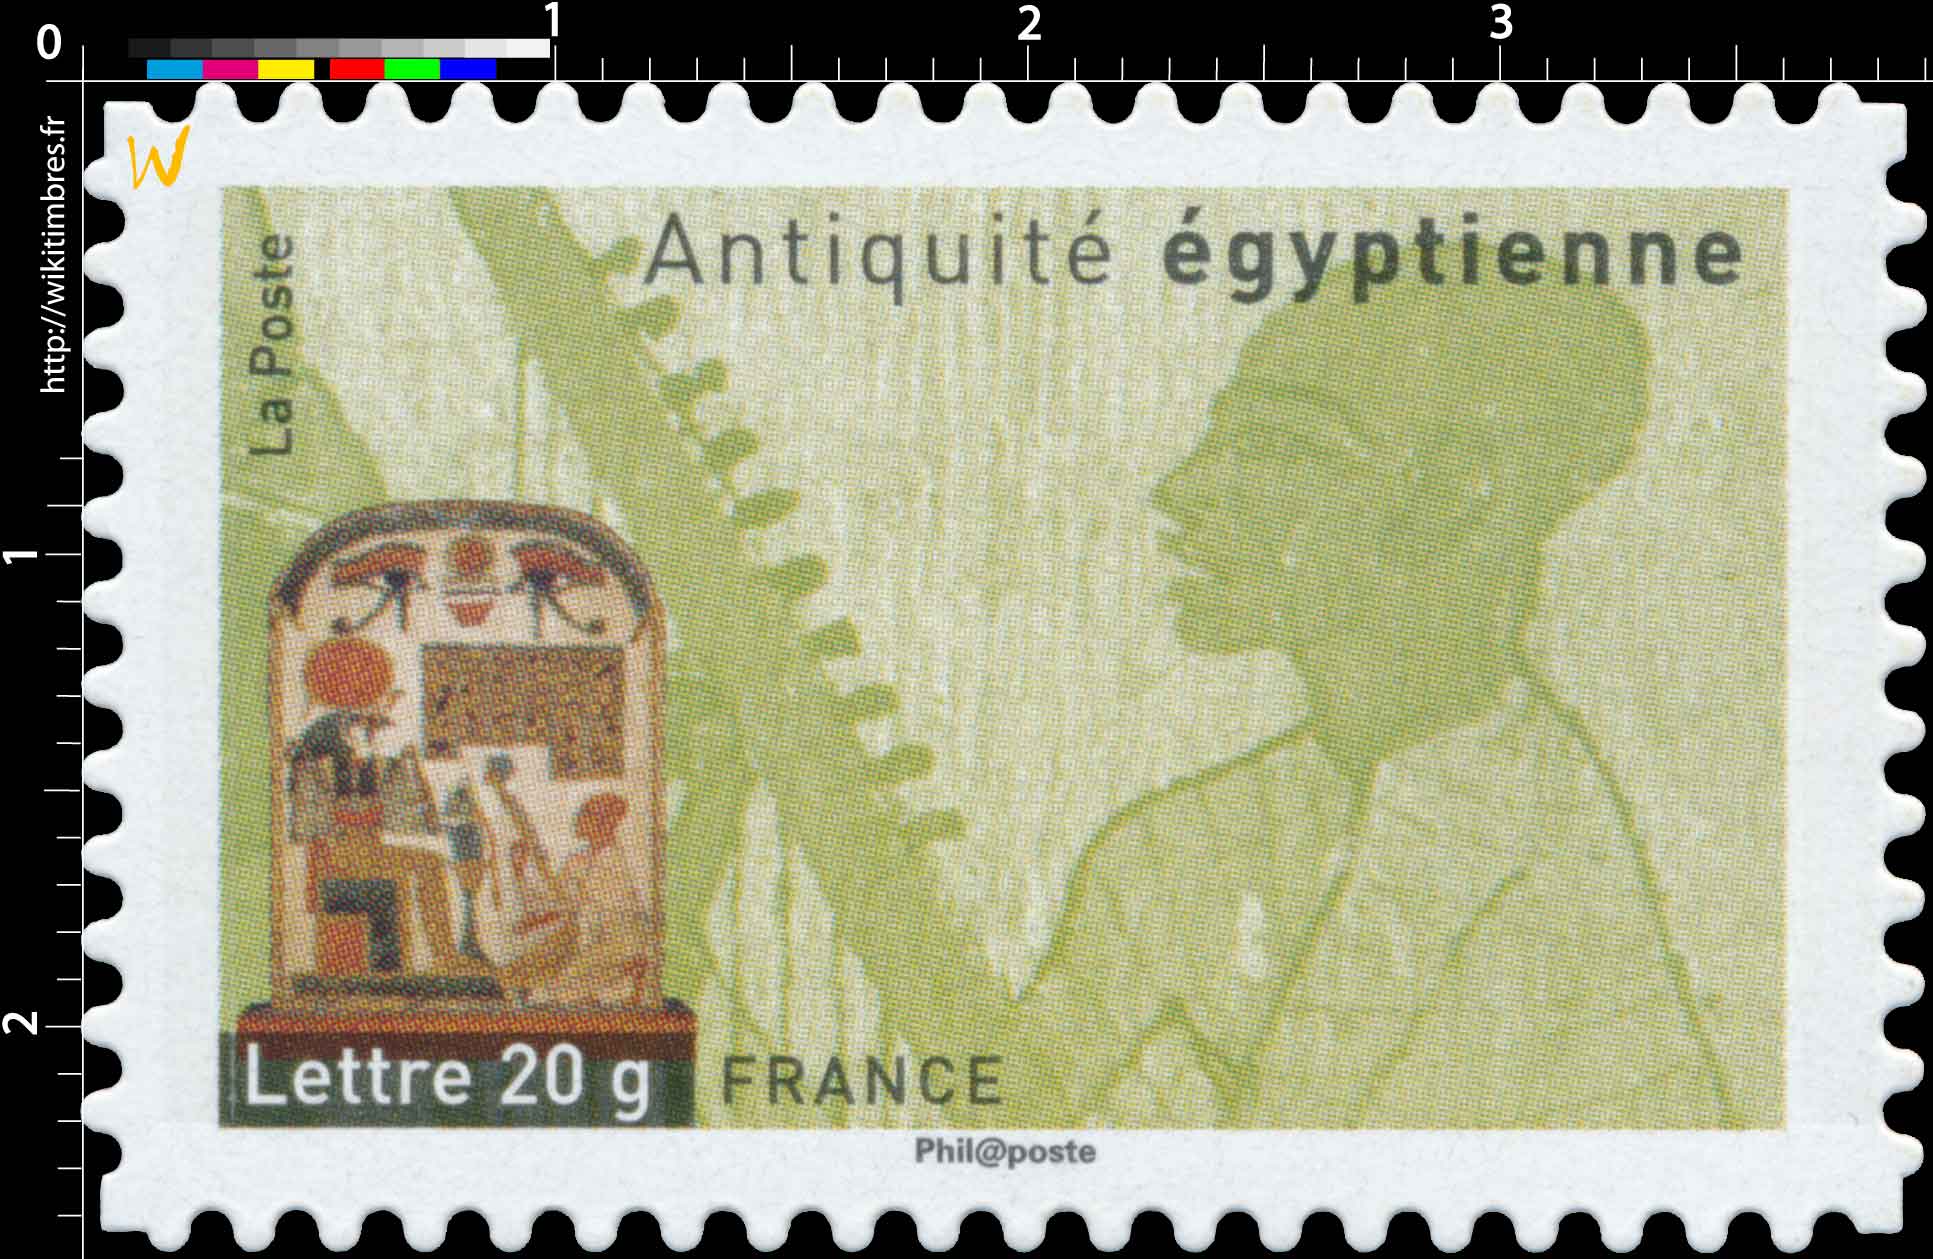 Antiquités égyptienne